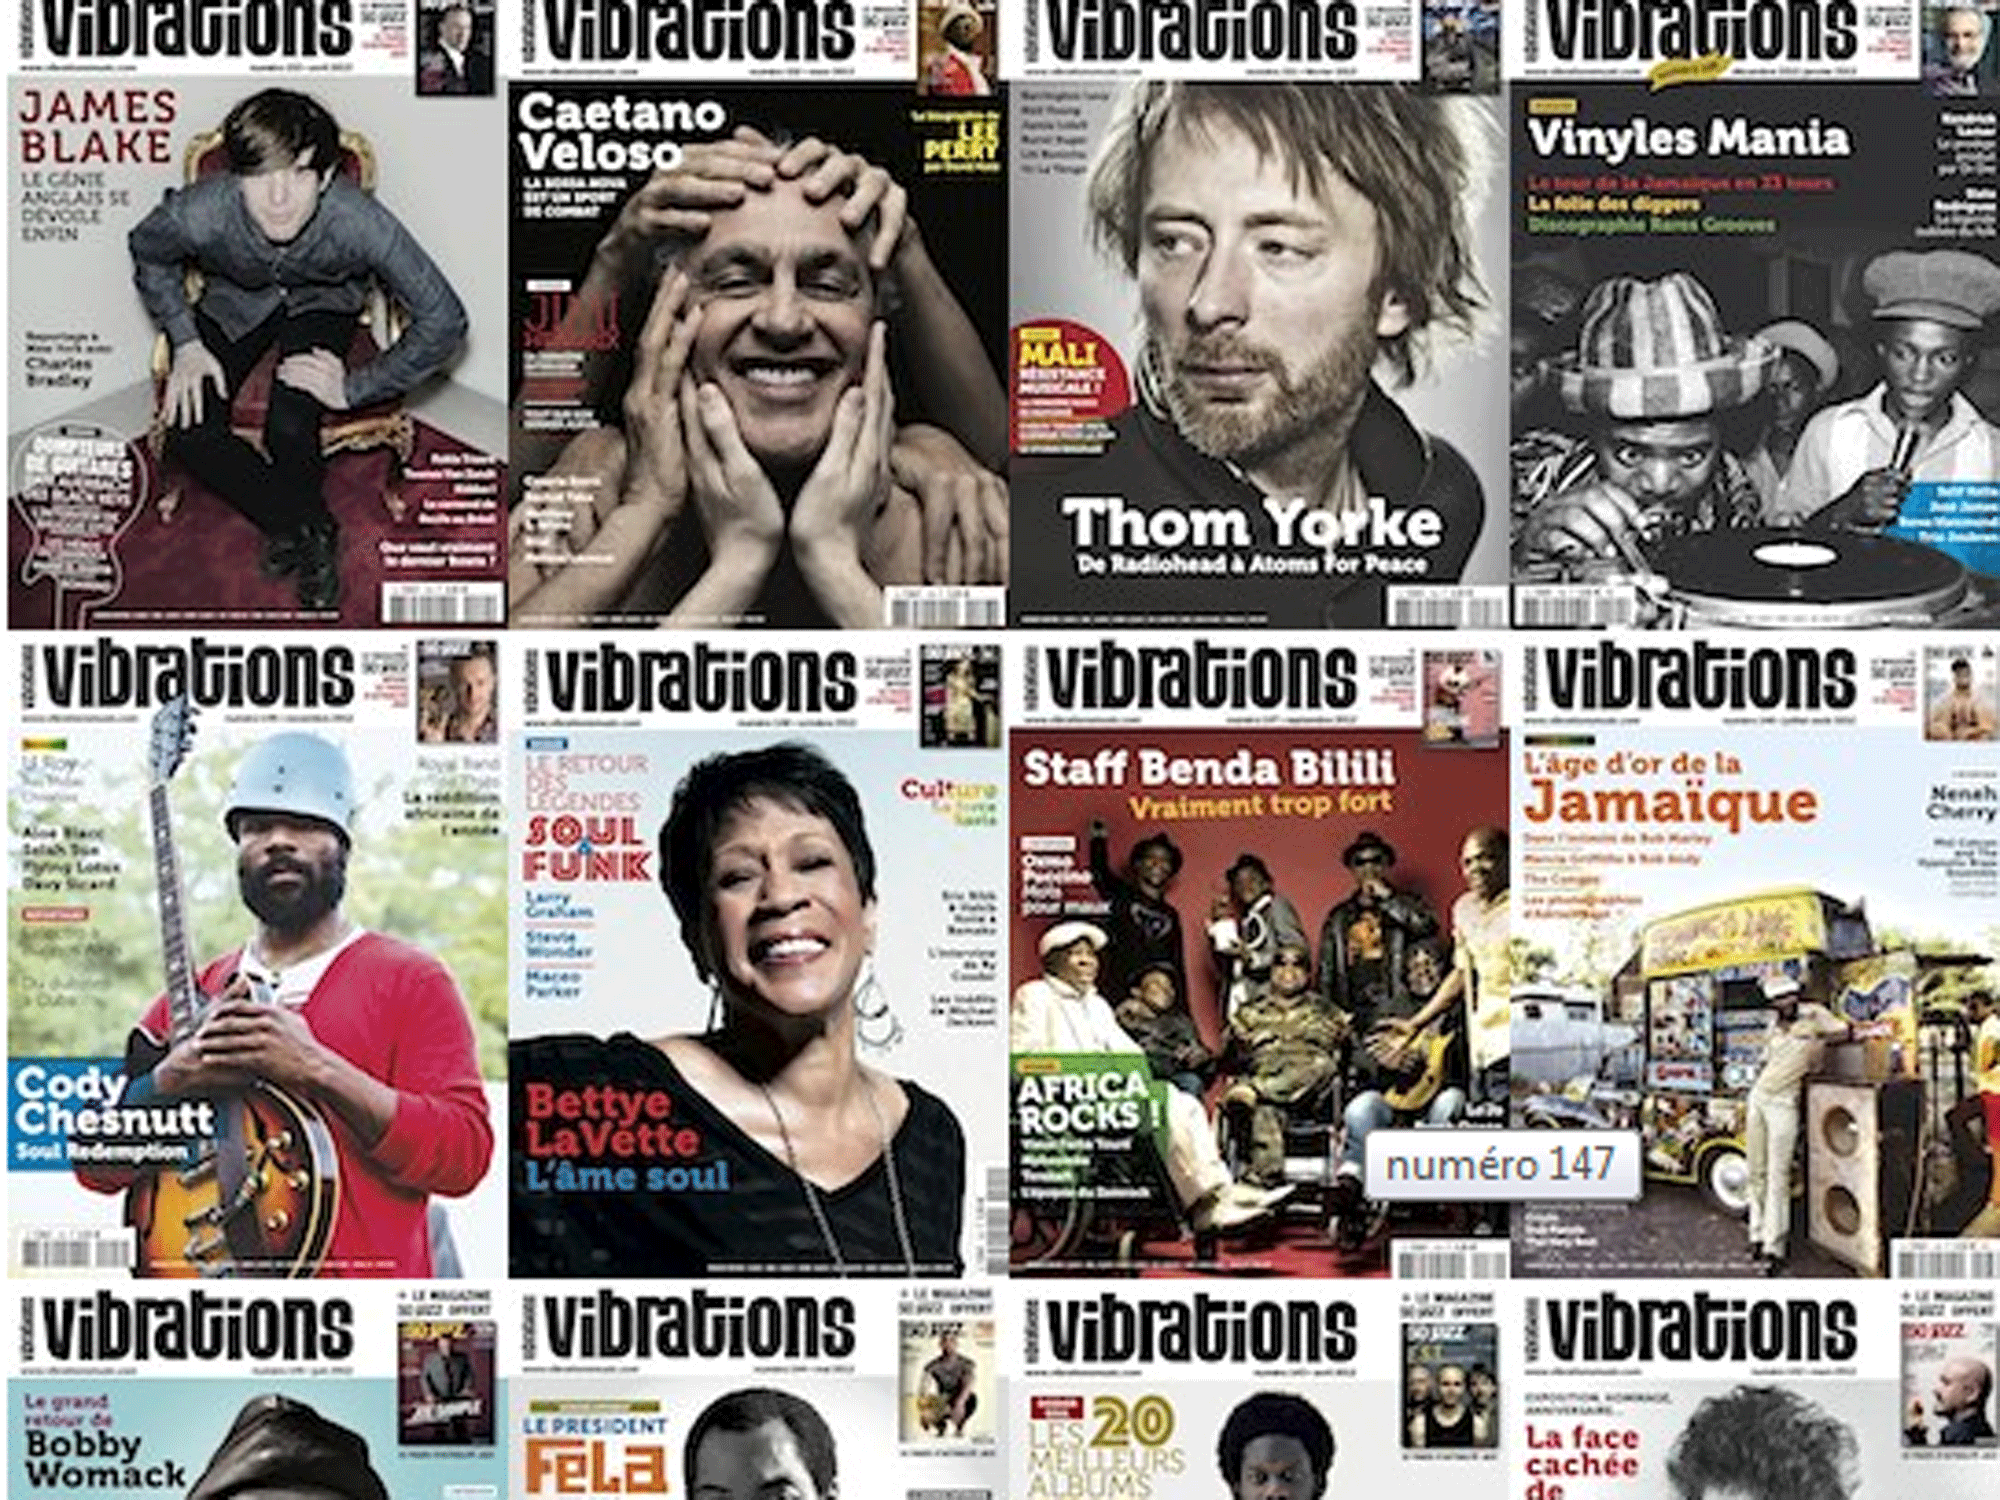 Vibrations, un magazine franco-suisse. [http://vibrationsmusic.com/magazine/anciens-numeros/]